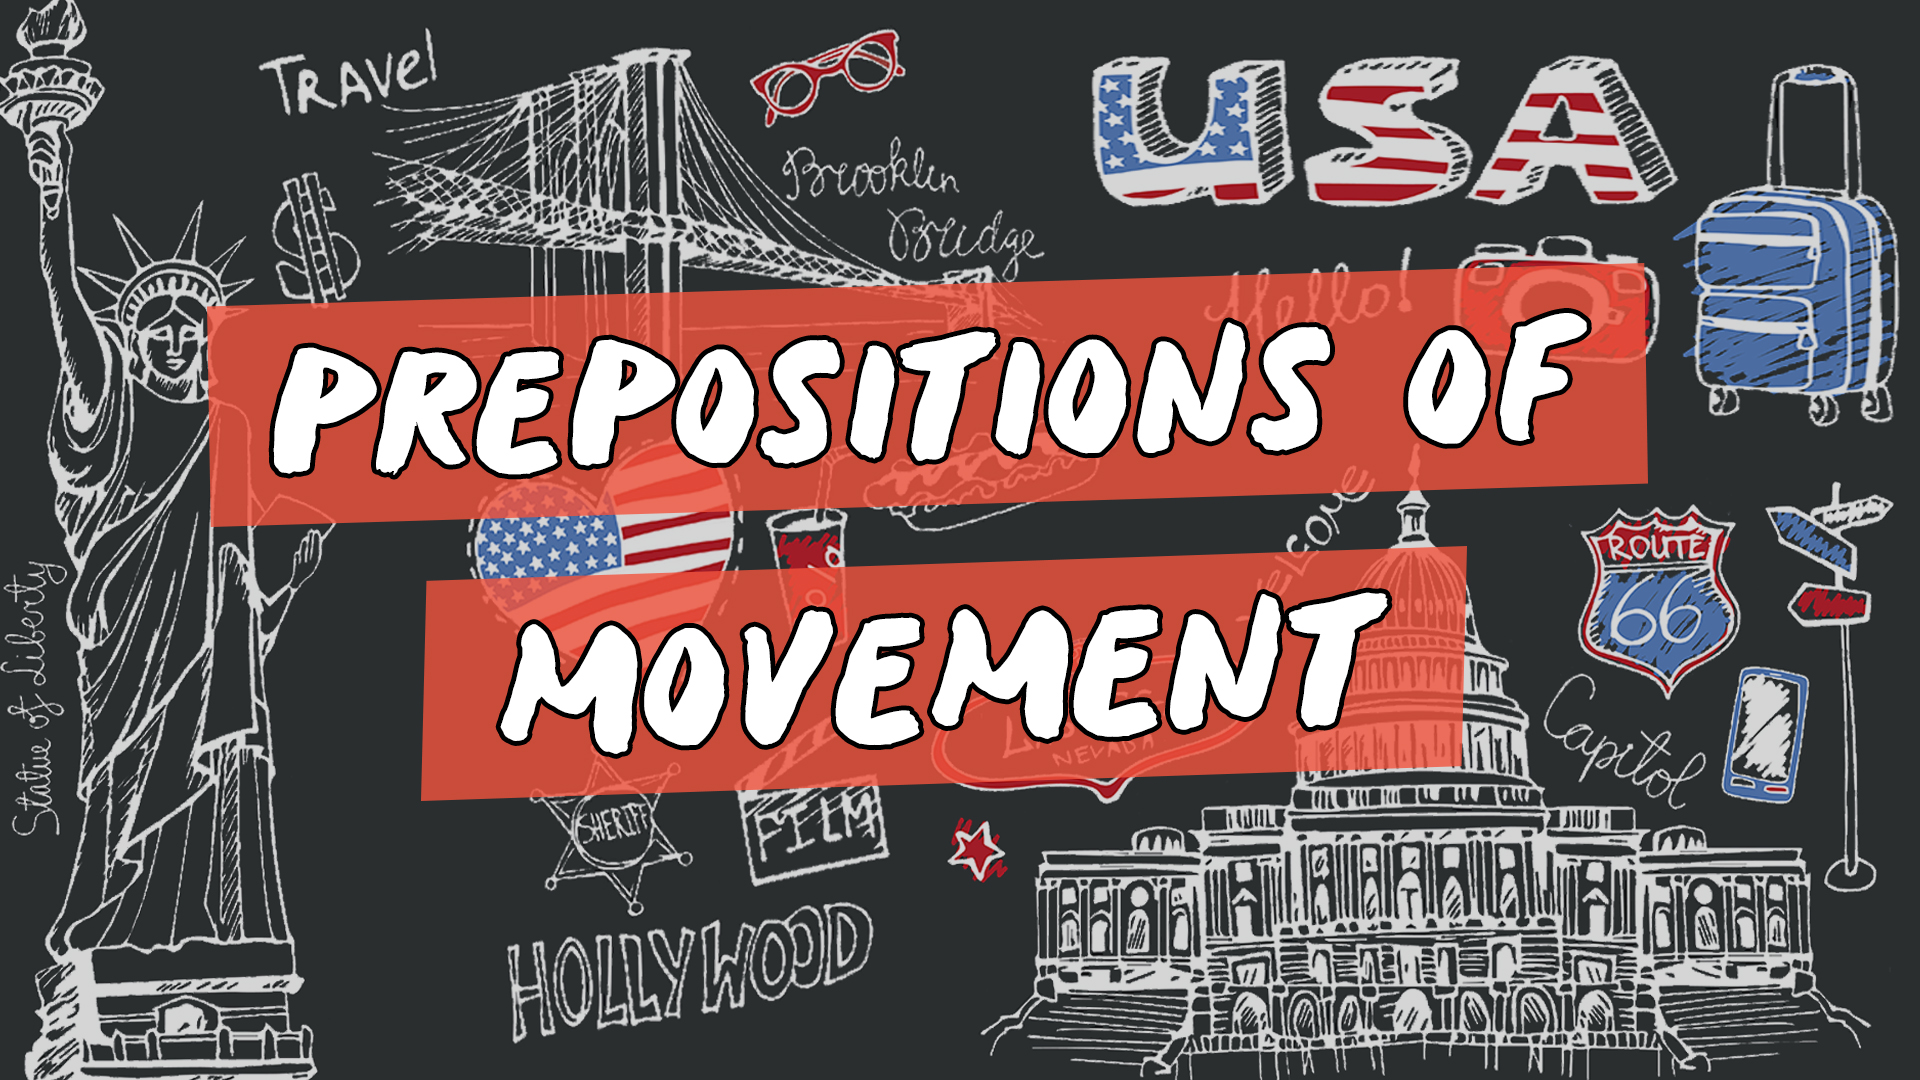 Escrito"Prepositions of Movement" sobre representação de vários elementos da cultura do inglês americano.